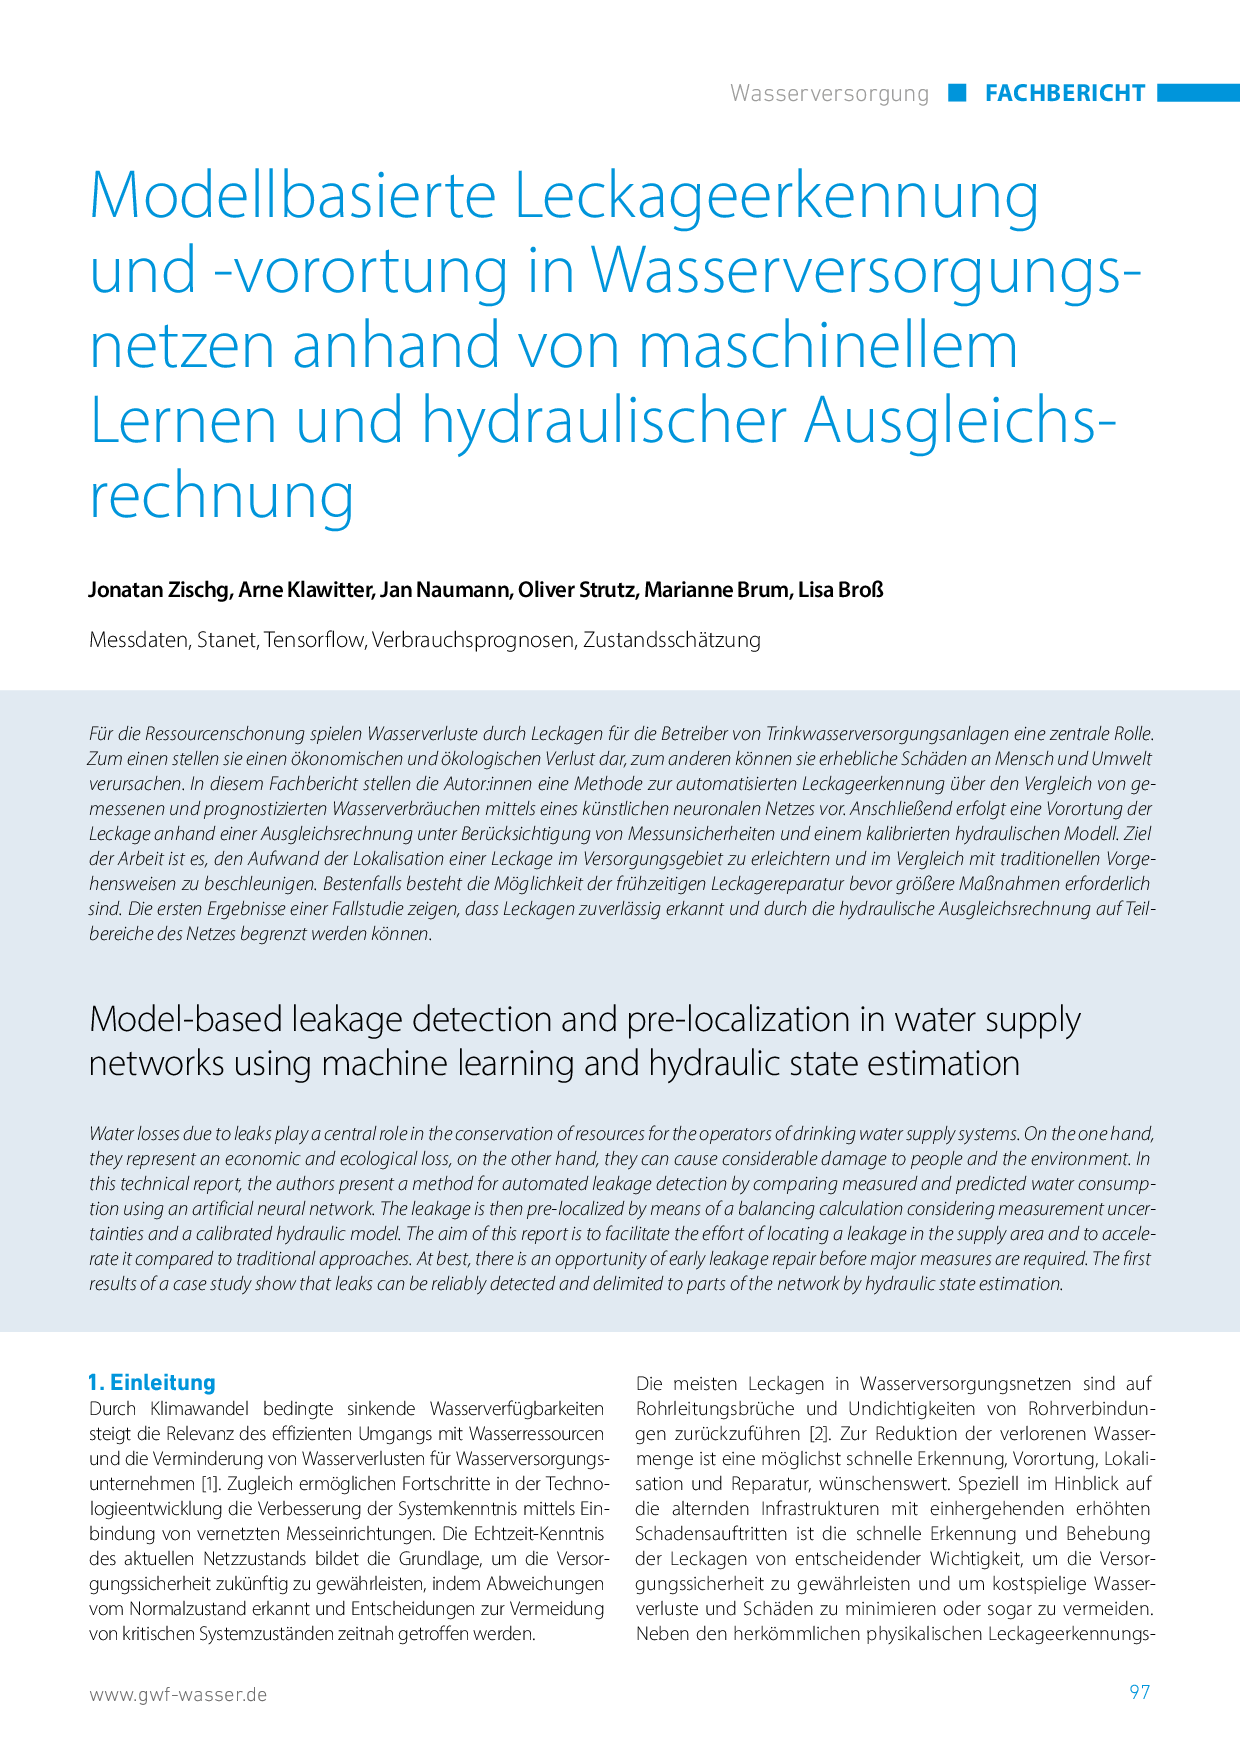 Modellbasierte Leckageerkennung und -vorortung in Wasserversorgungsnetzen anhand von maschinellem Lernen und hydraulischer Ausgleichsrechnung